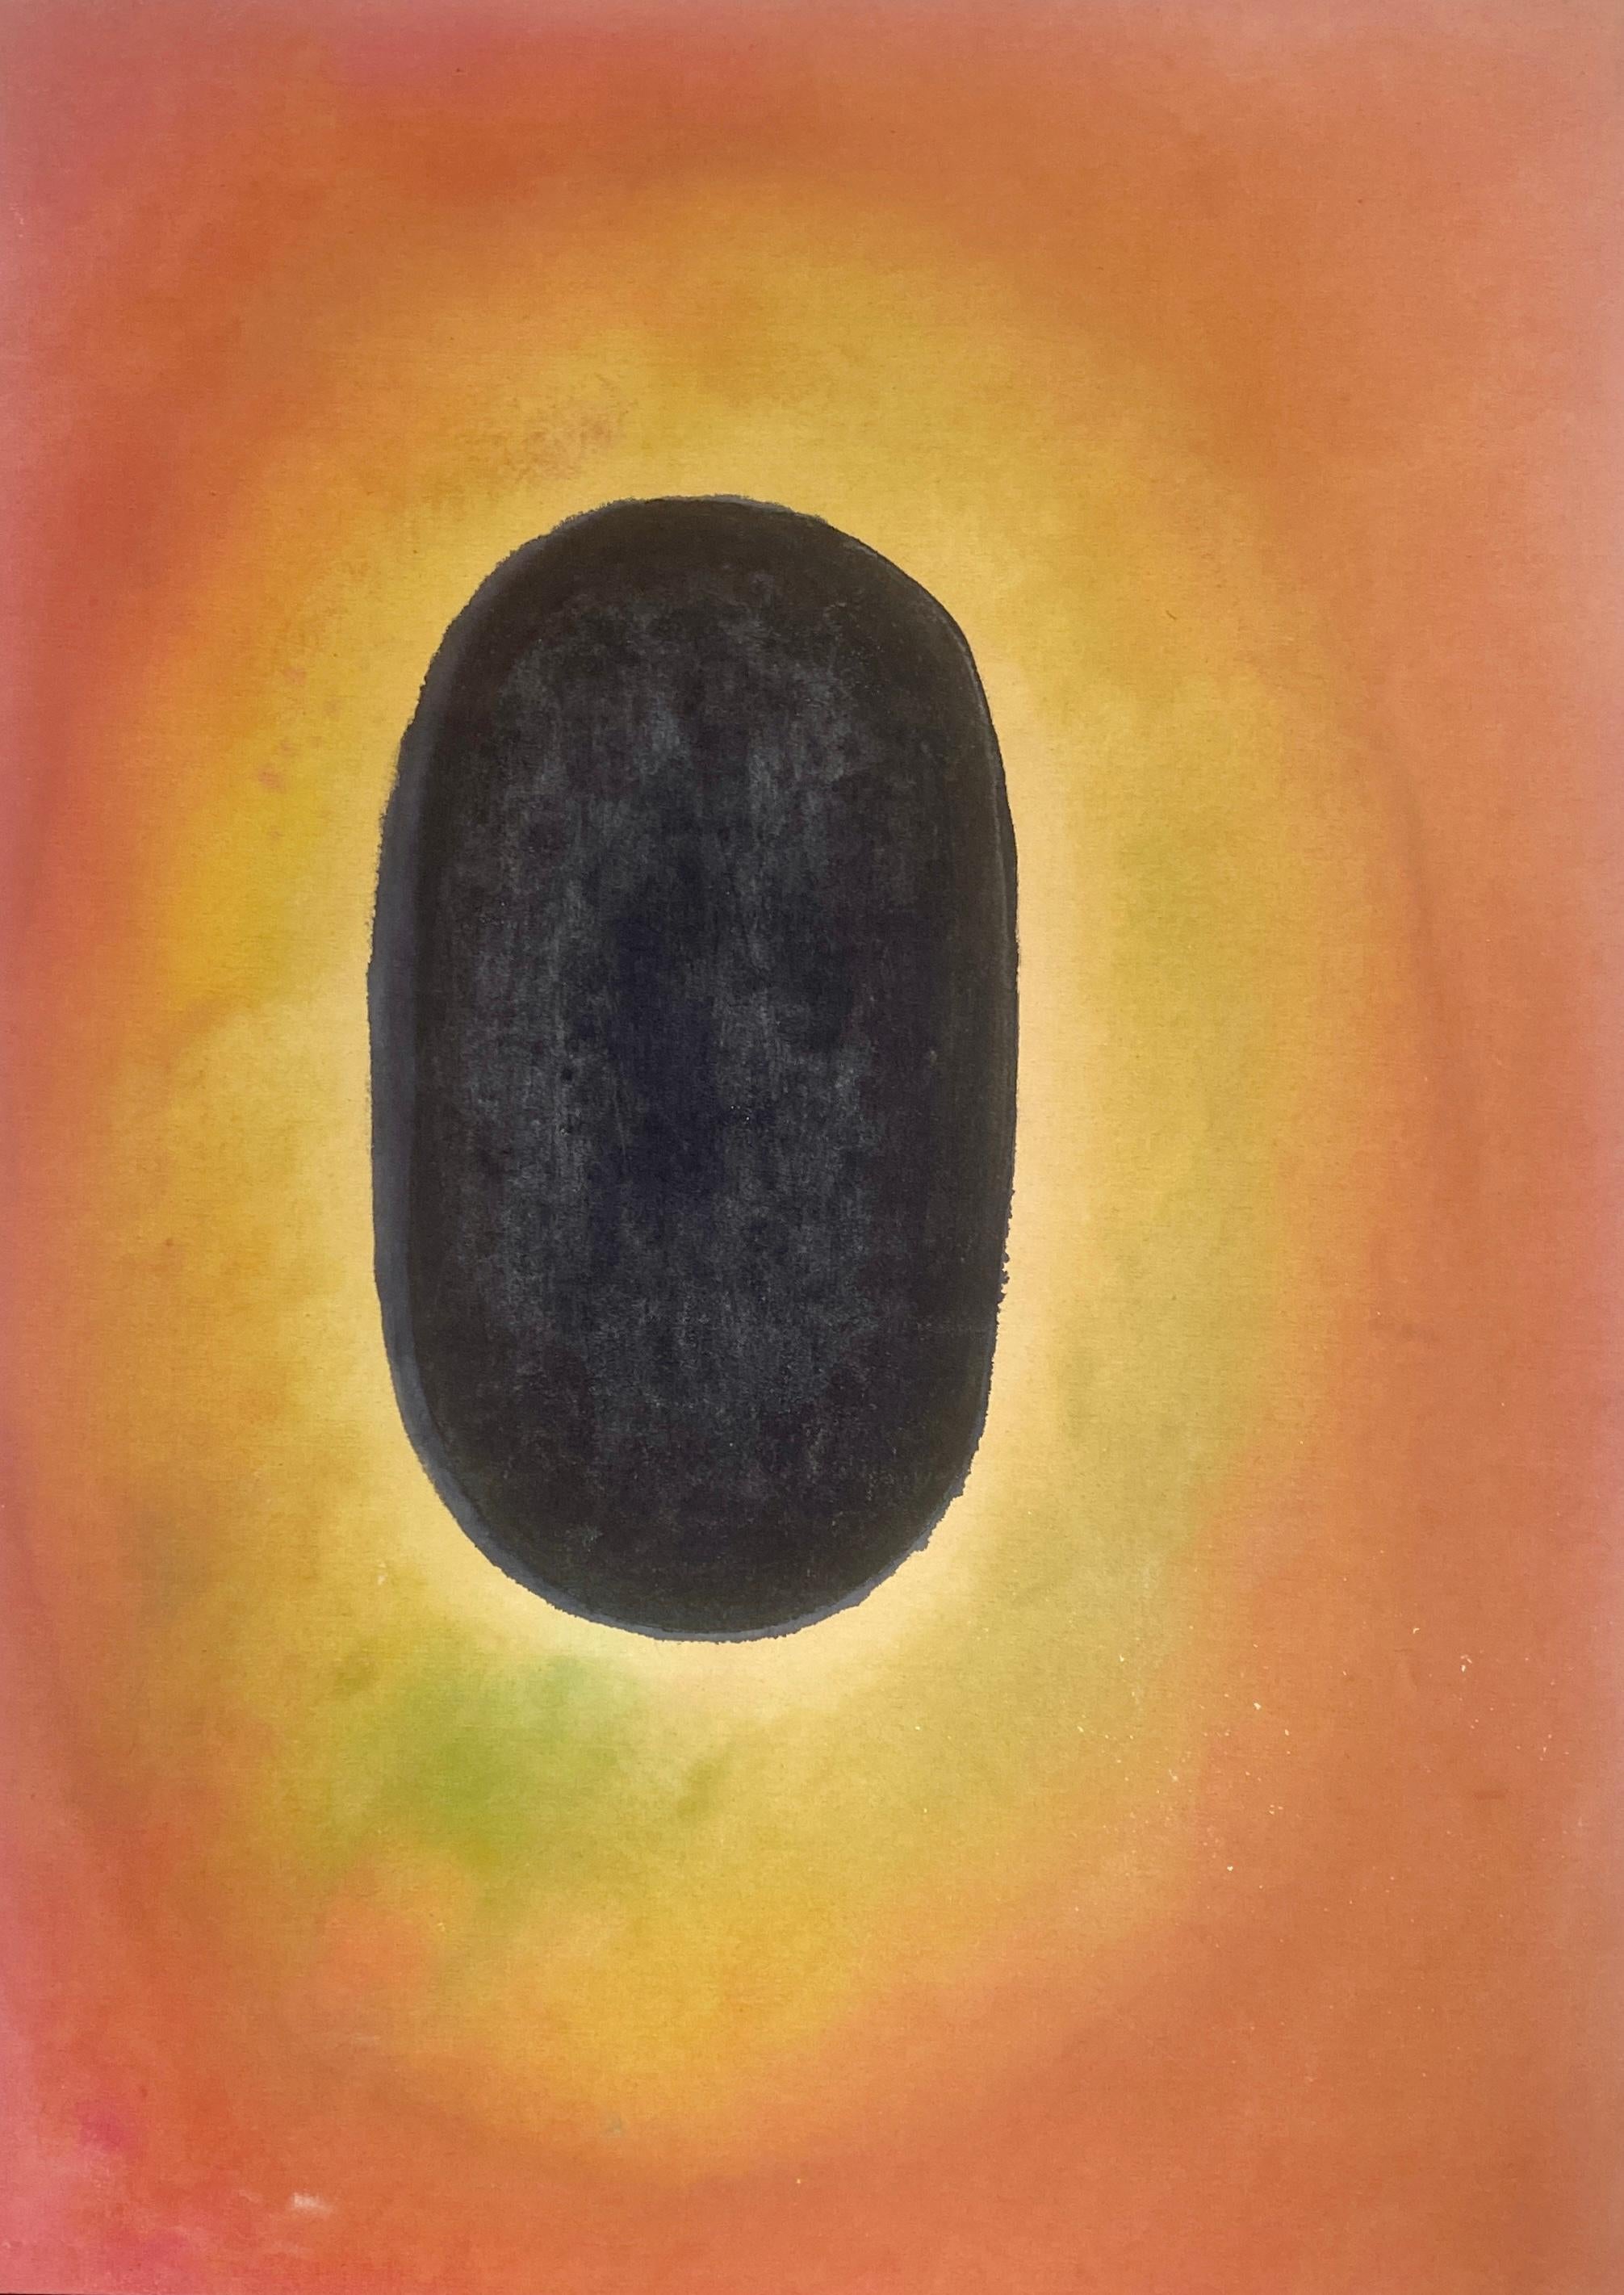 Abstract Painting Elisa Niva - Peinture de Tantra à l'eau-forte #2 - peinture de méditation abstraite en teinture de couleur dans le champ